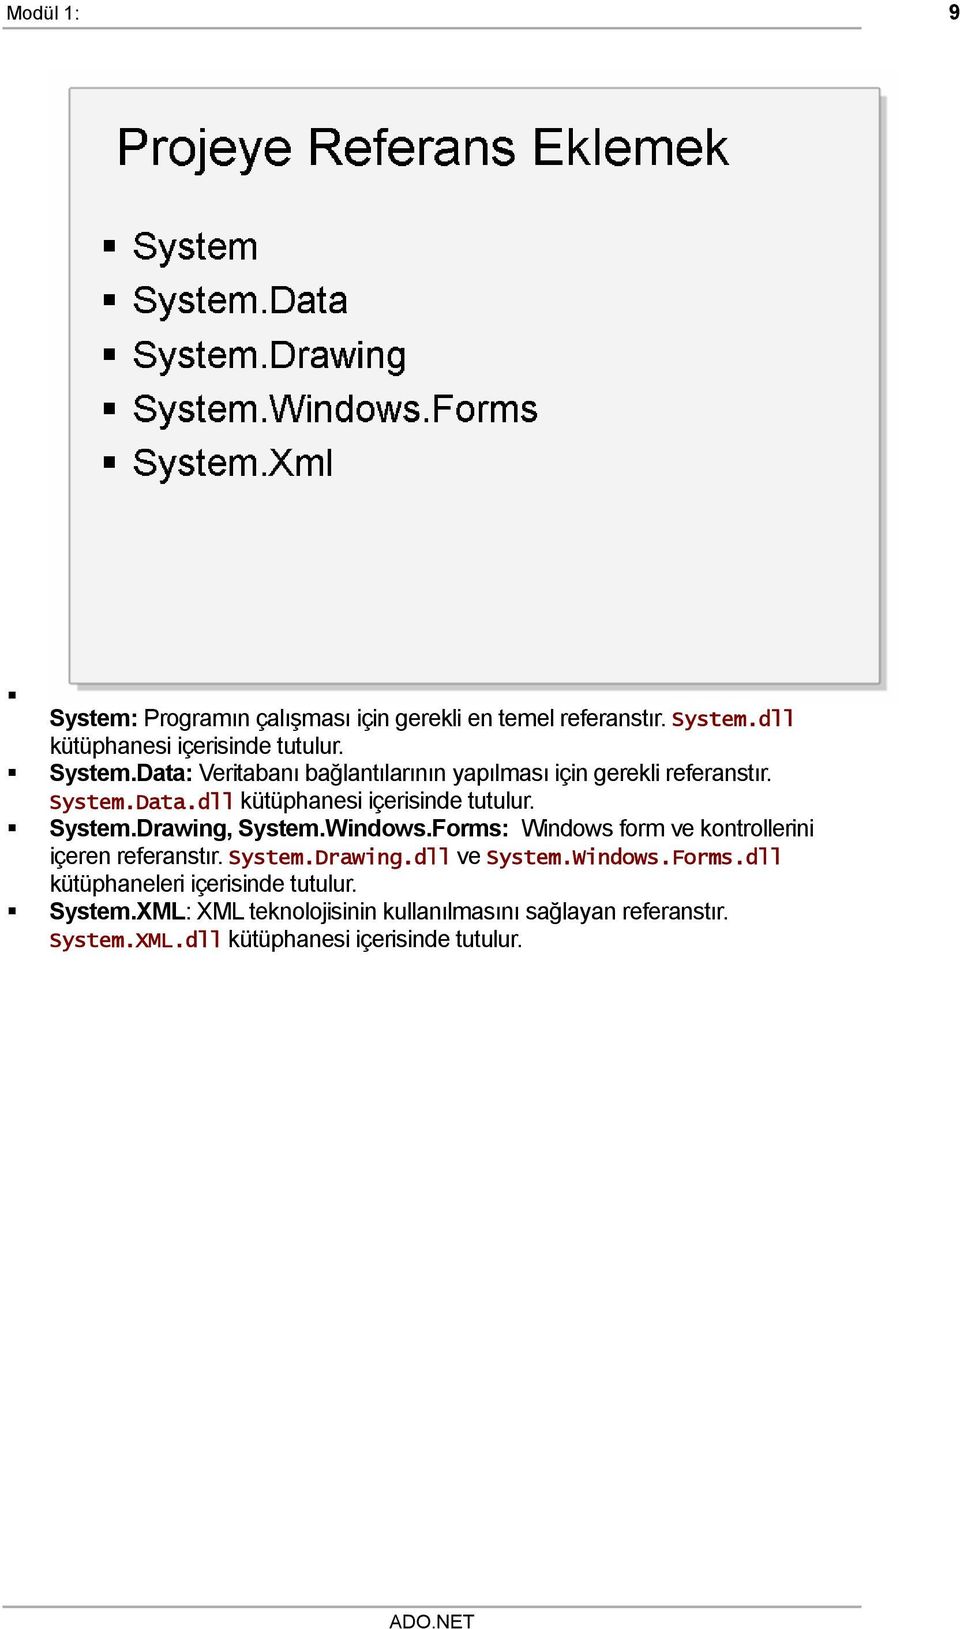 Forms: Windows form ve kontrollerini içeren referanstır. System.Drawing.dll ve System.Windows.Forms.dll kütüphaneleri içerisinde tutulur.